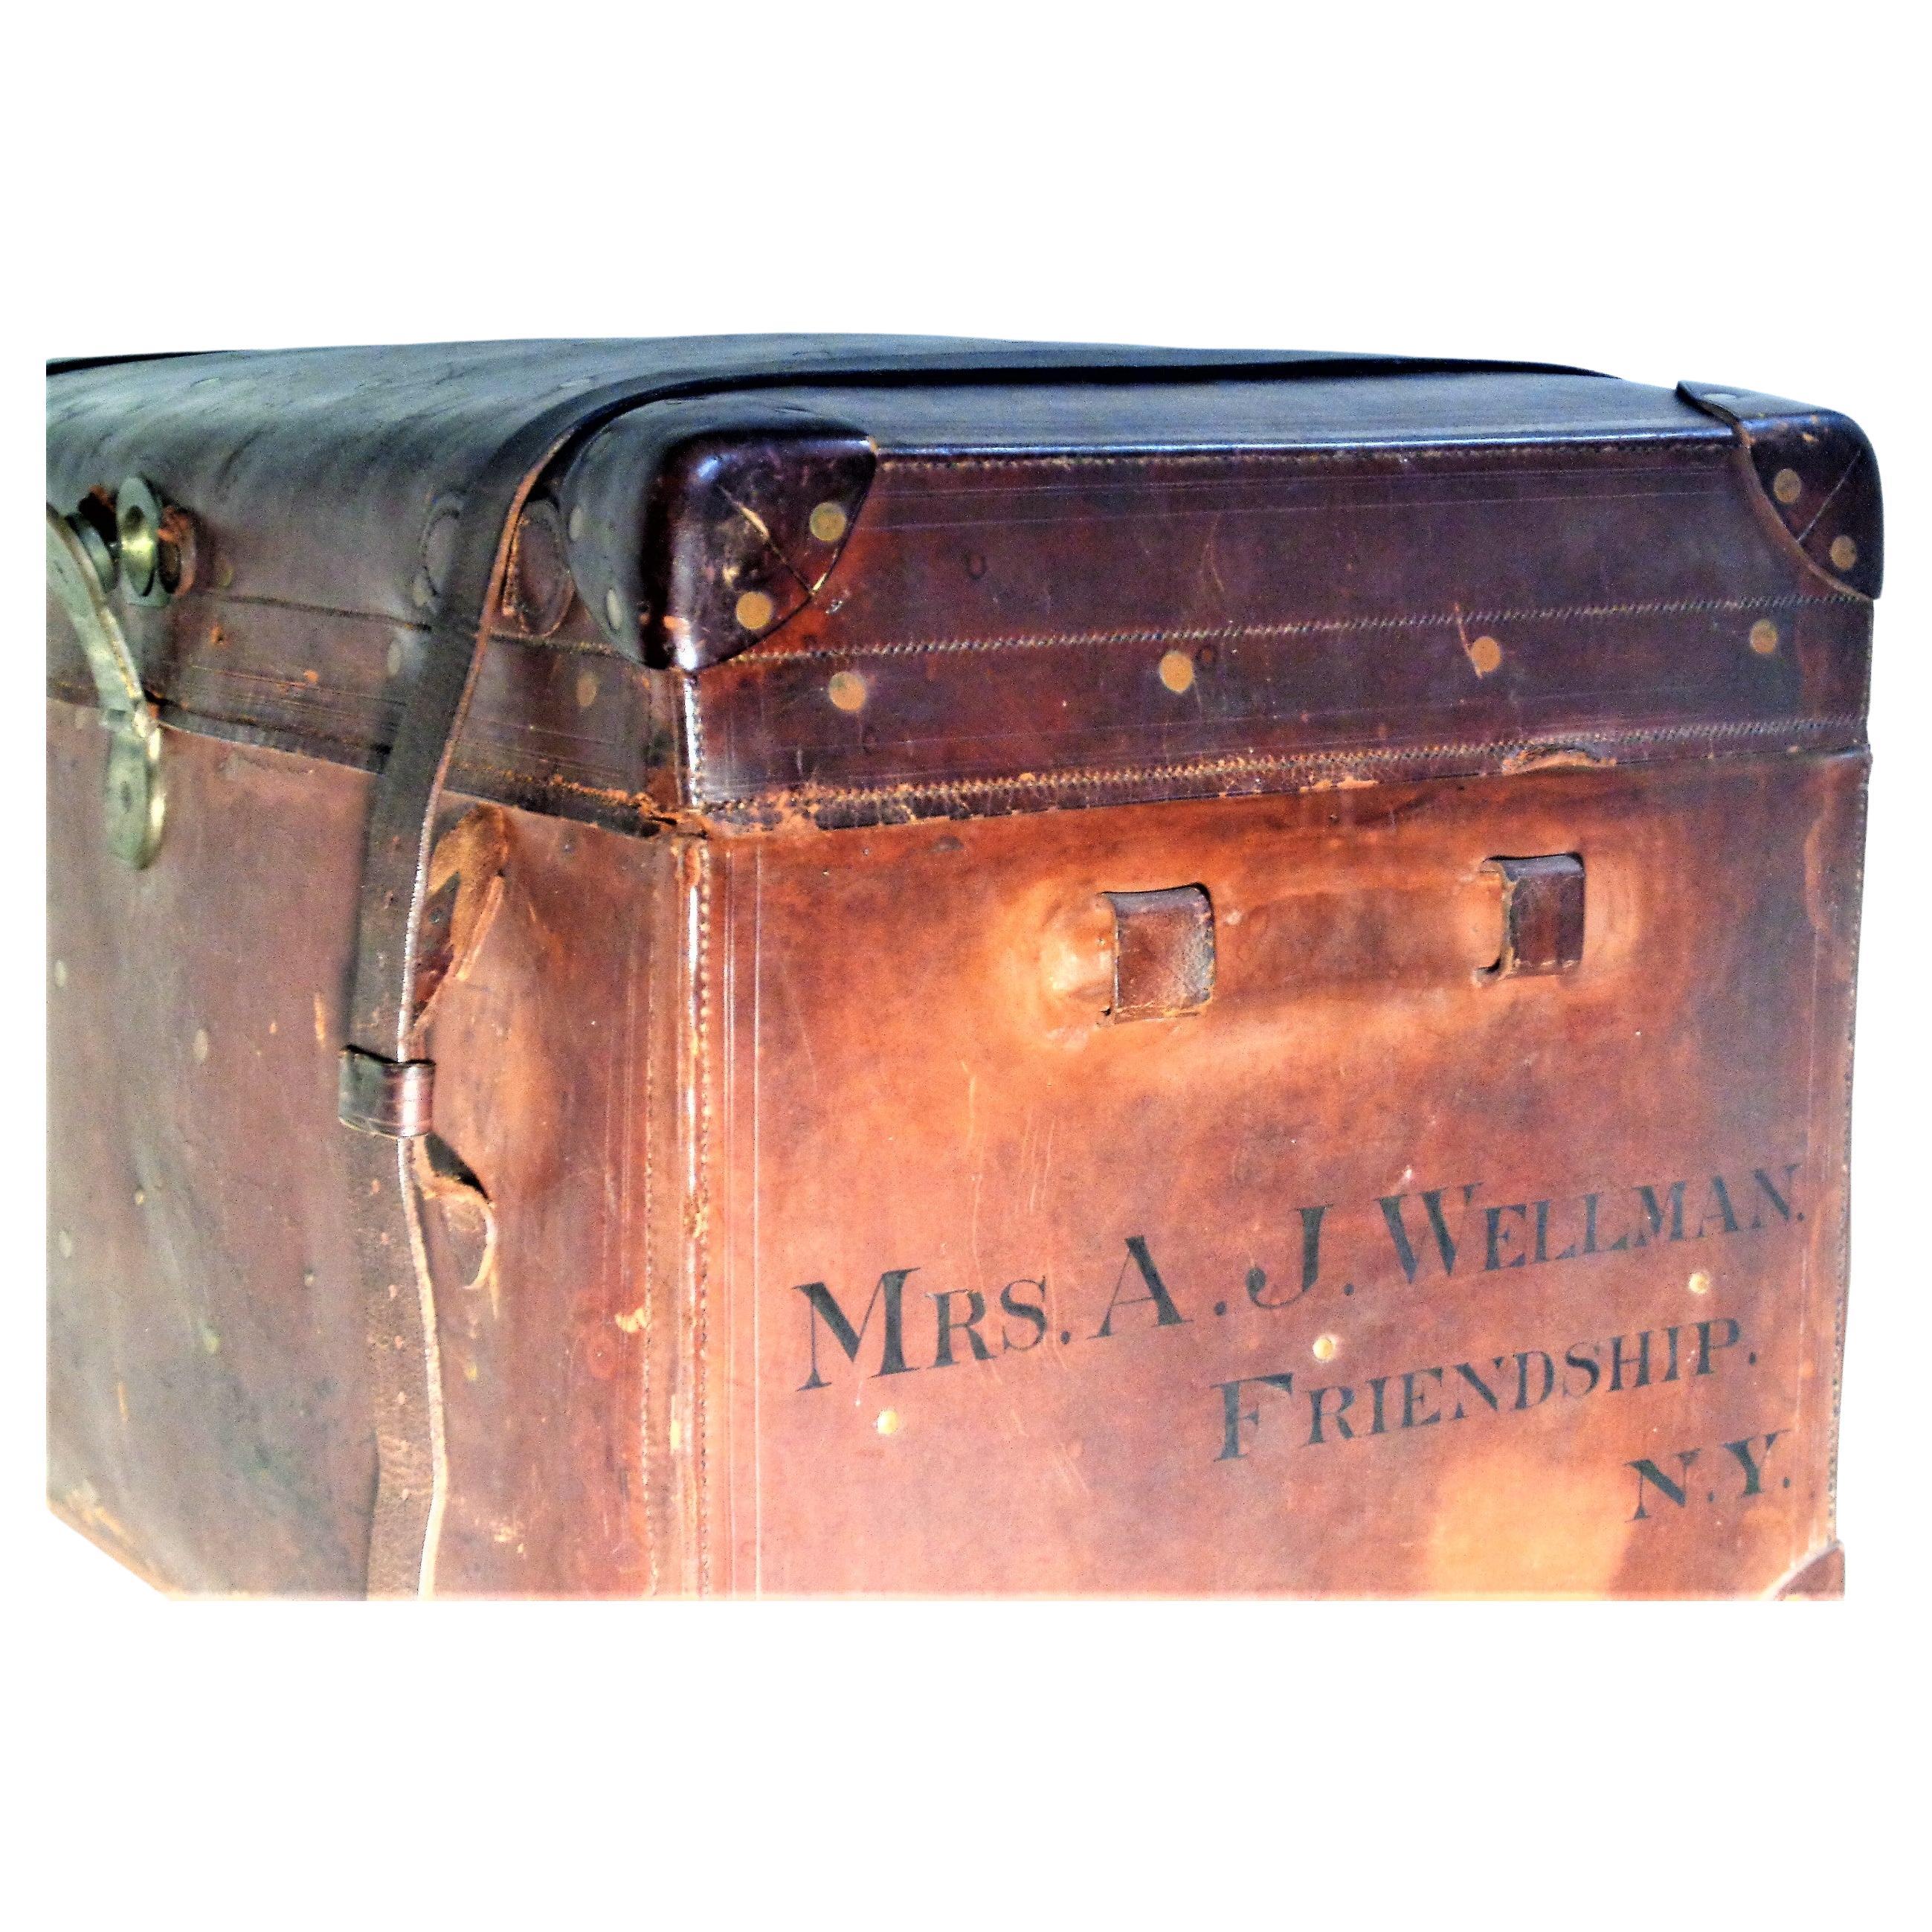 Une grande malle de voyage américaine du 19ème siècle en cuir riveté et en laiton, joliment patinée en surface par les couleurs d'origine du cuir et du laiton. Le nom de la propriétaire - Mrs. A.J. - est tamponné à l'encre sur les deux côtés.